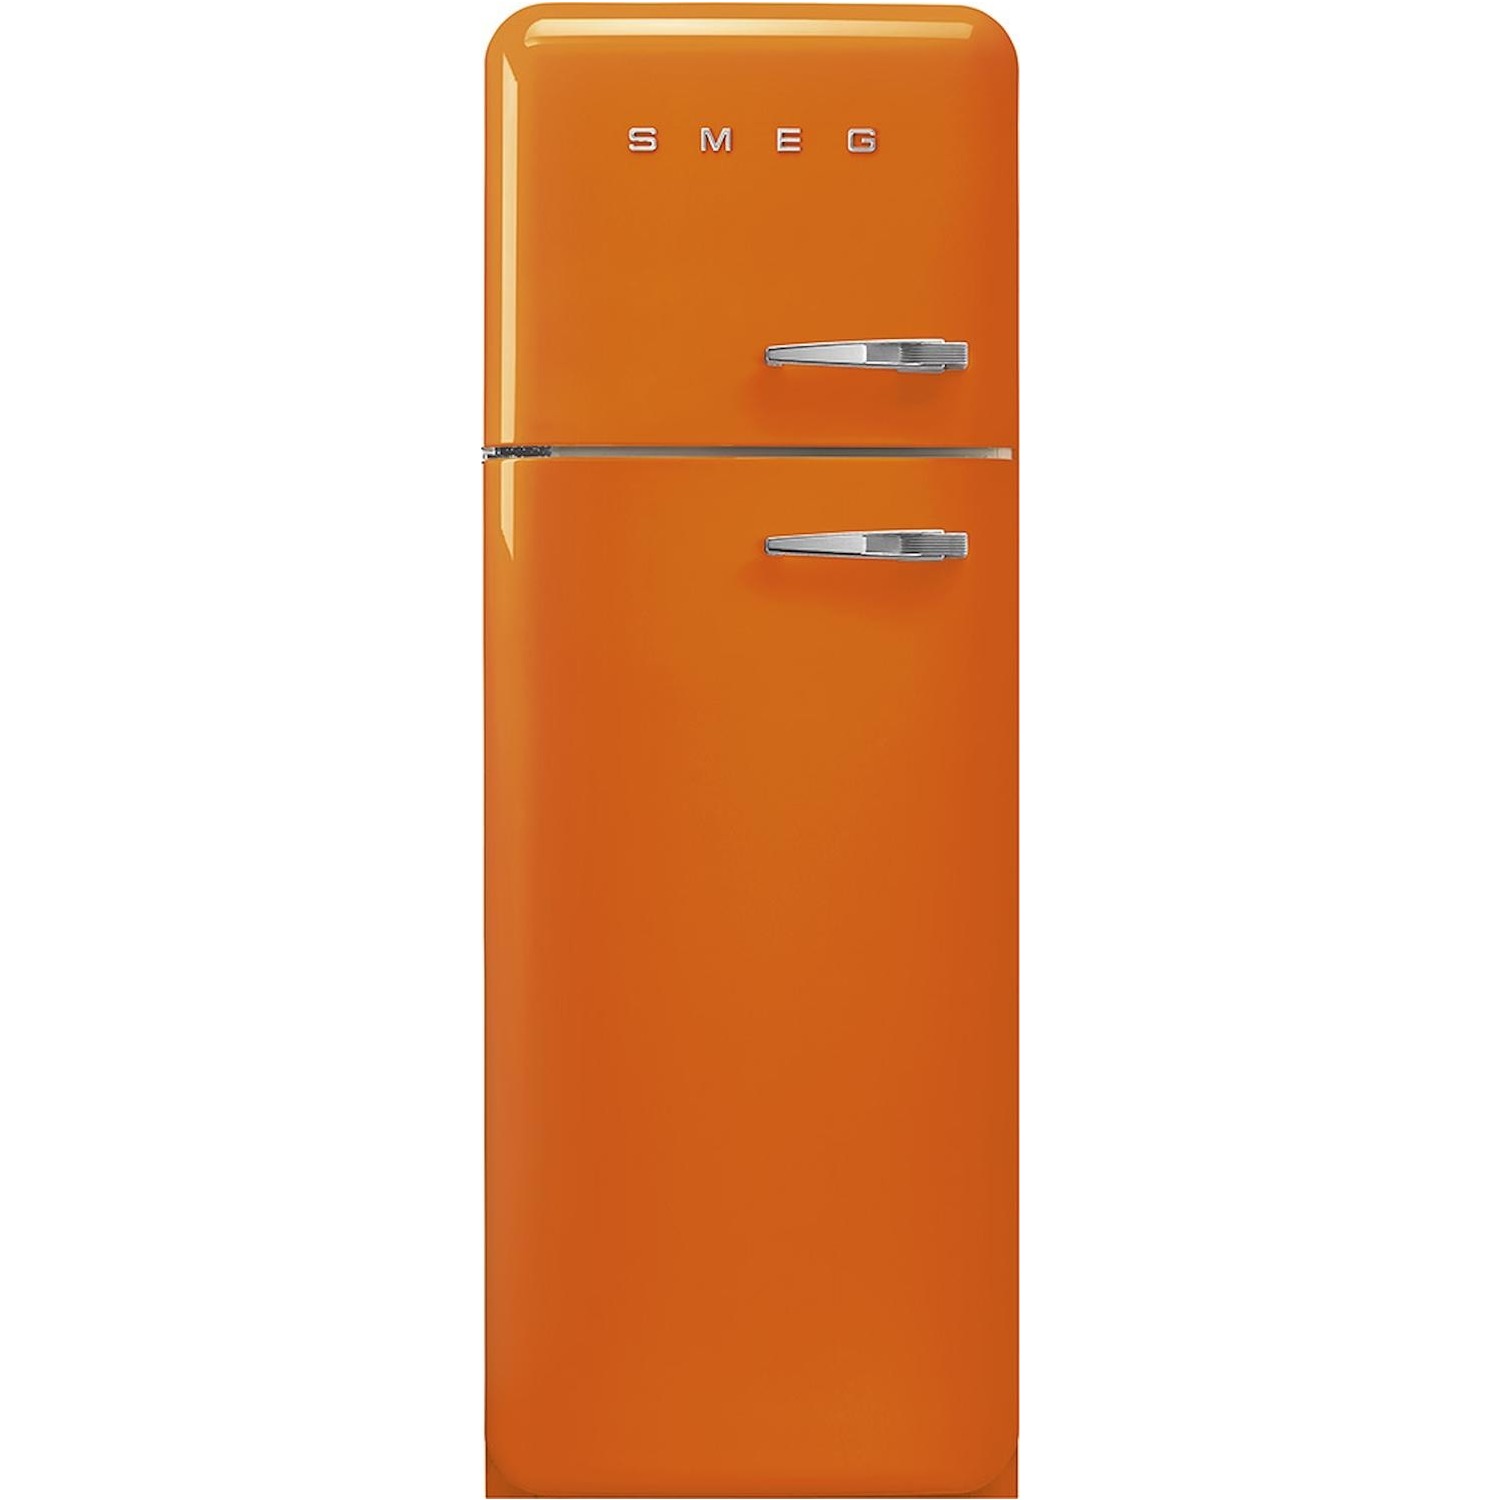 Immagine per Frigorifero doppia porta Smeg FAB30LOR5 arancione da DIMOStore